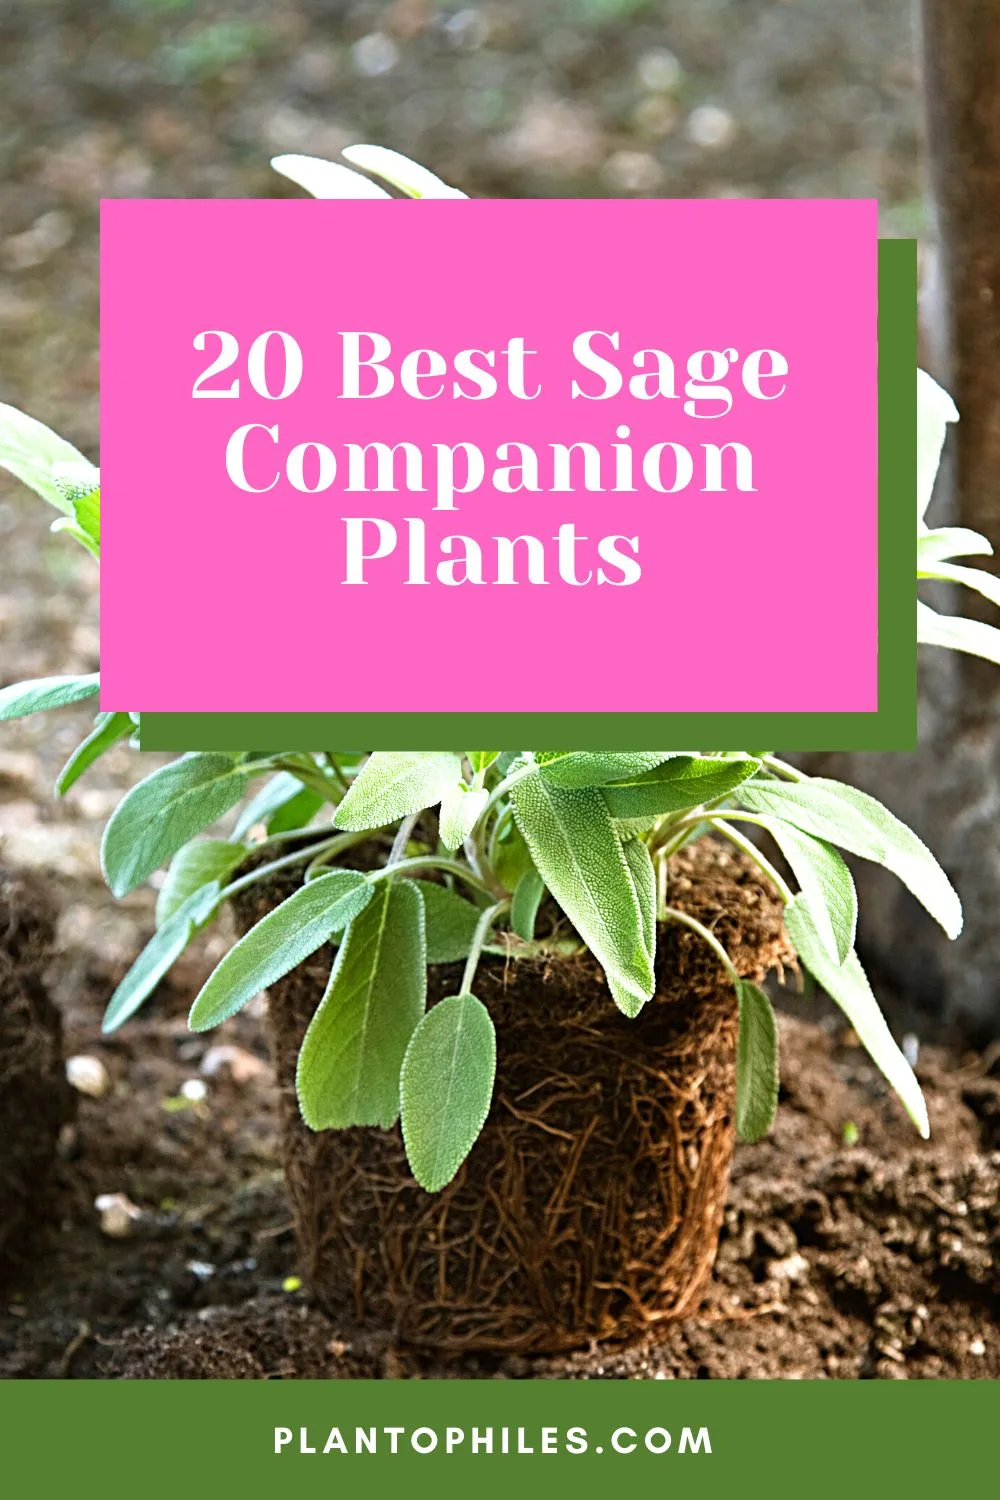 20 Best Sage Companion Plants